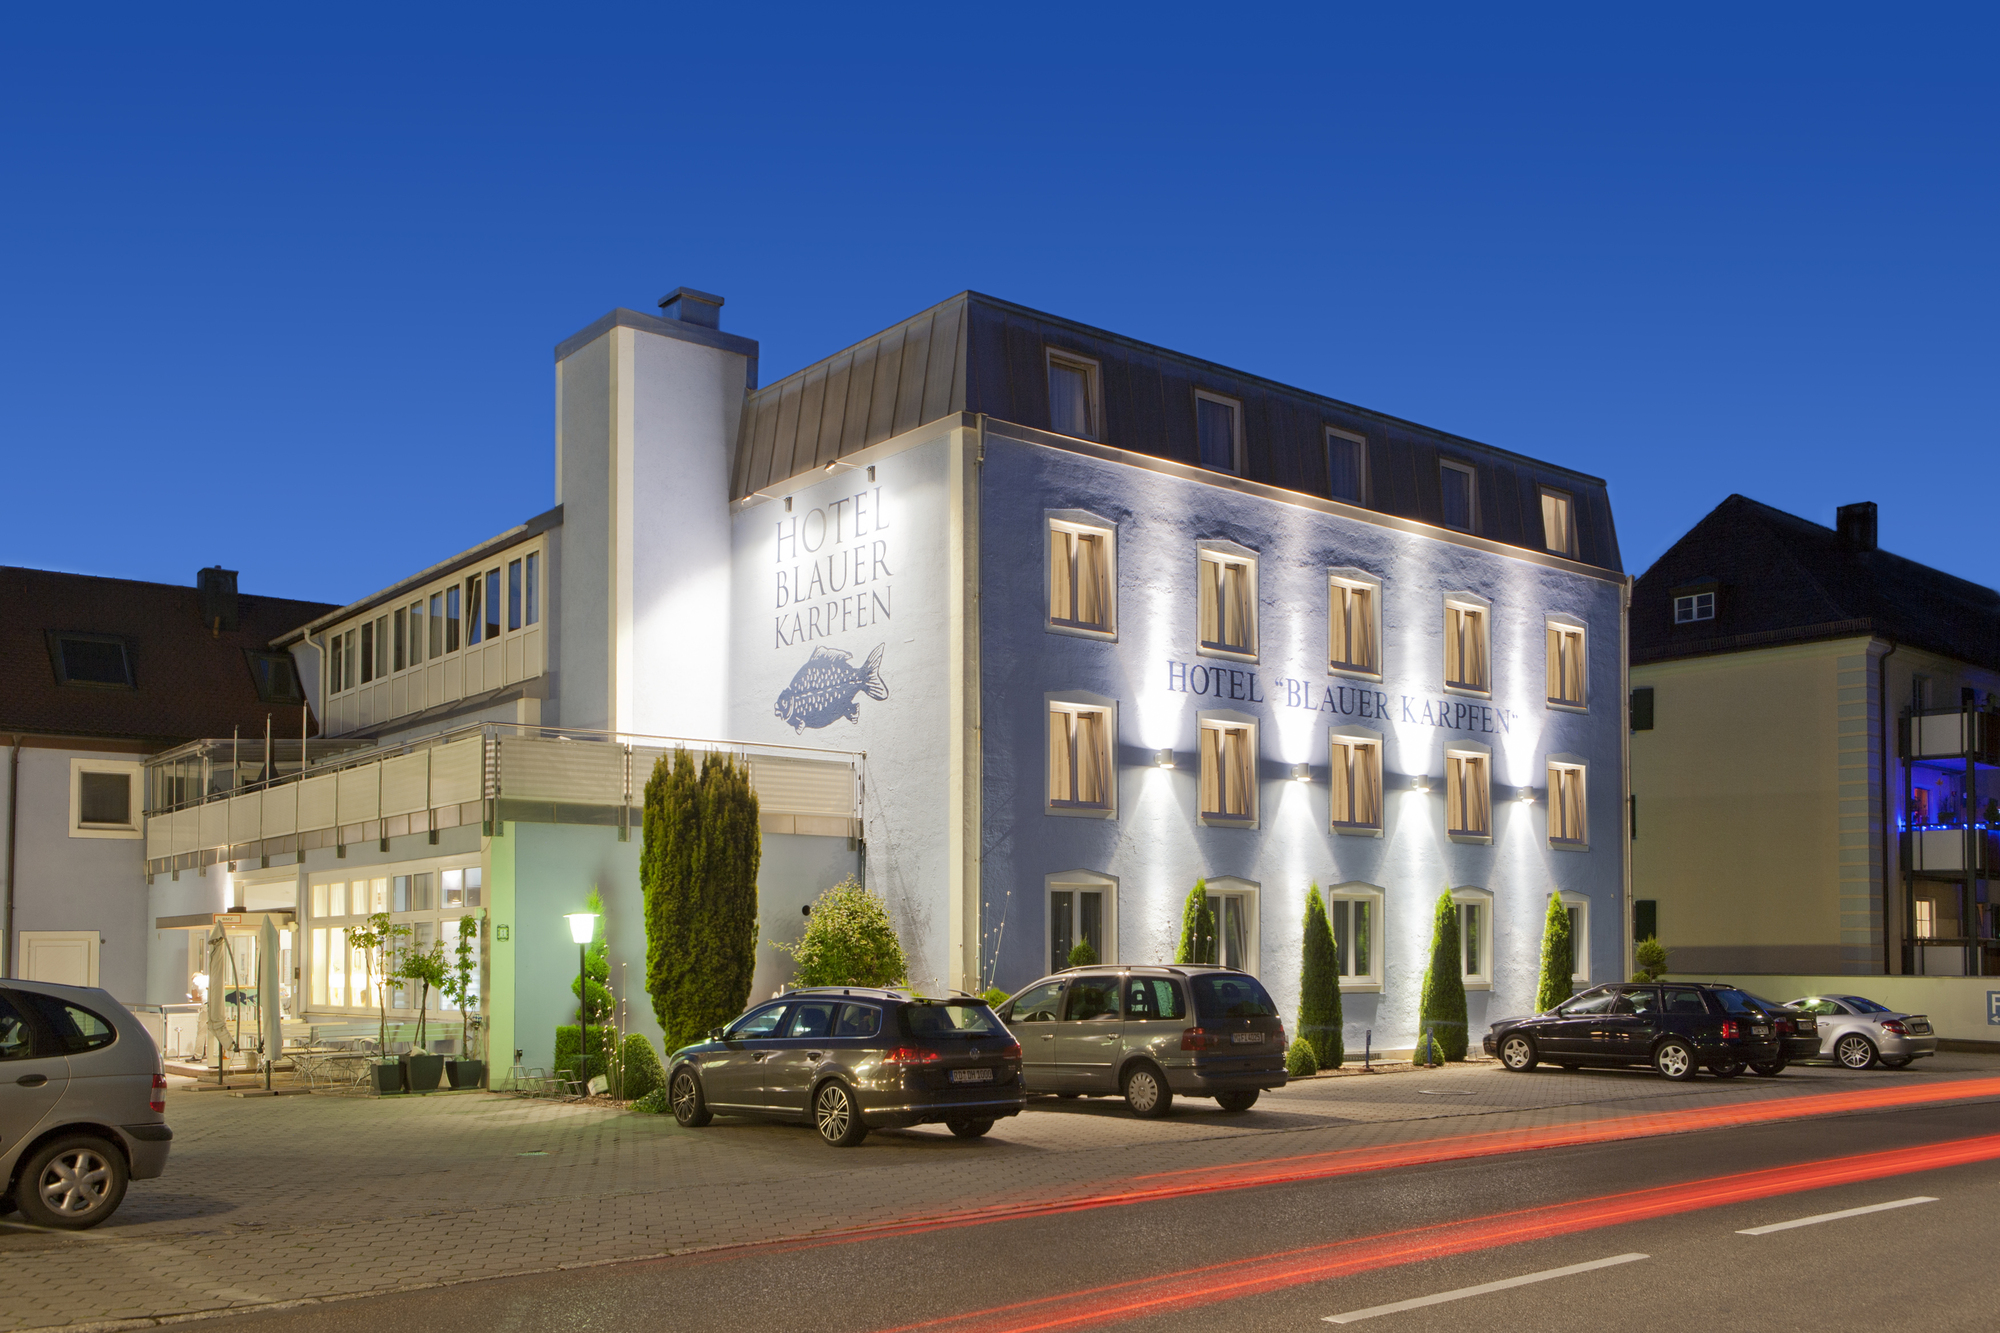 Hotel blauer Karpfen, EM-Power Europe - Messe Hotel in Oberschleißheim bei München